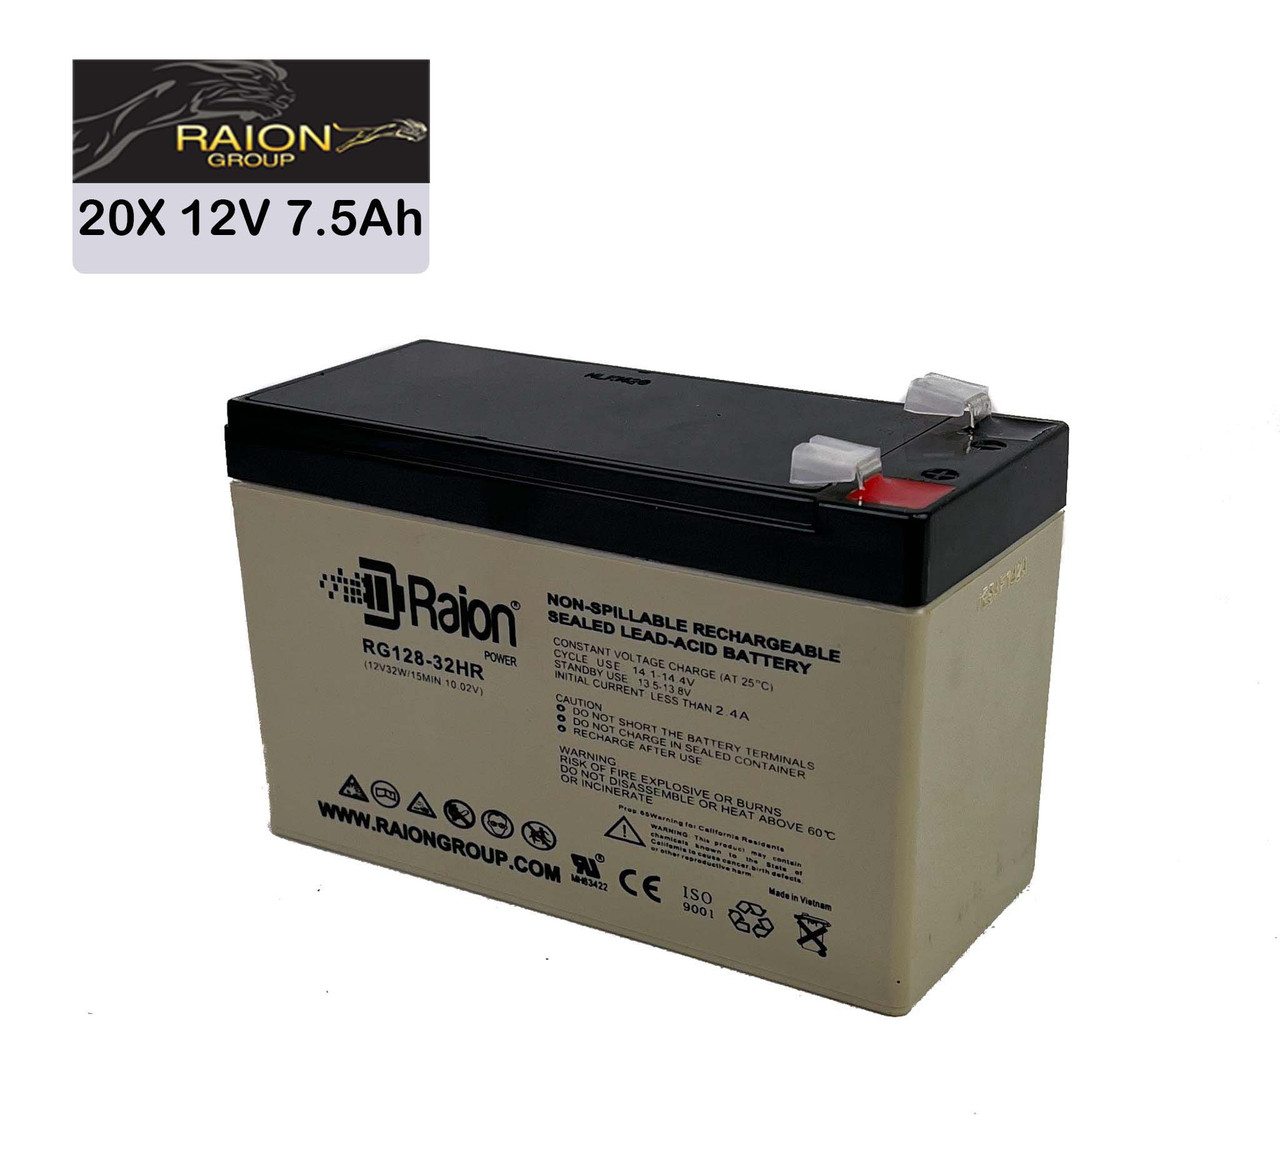 Raion Power 12V 7.5Ah High Rate Discharge UPS Batteries for Liebert UPStation-GXT60000T-208 - 20 Pack